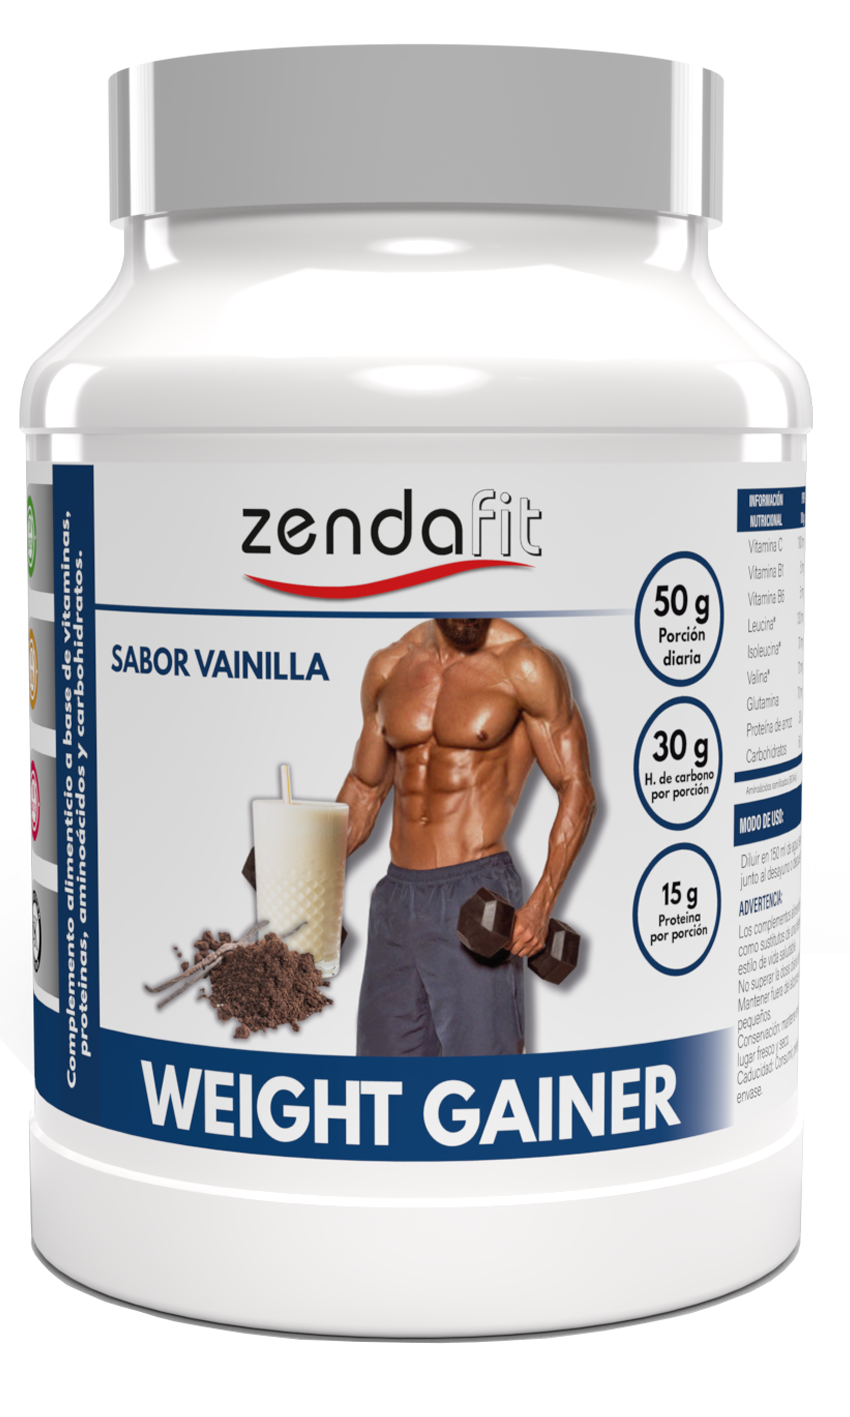 Weight Gainer (Ganador de Peso) Sabor Vainilla - 1800 gramos (15g de proteínas y 30g de carbohidratos por porción)